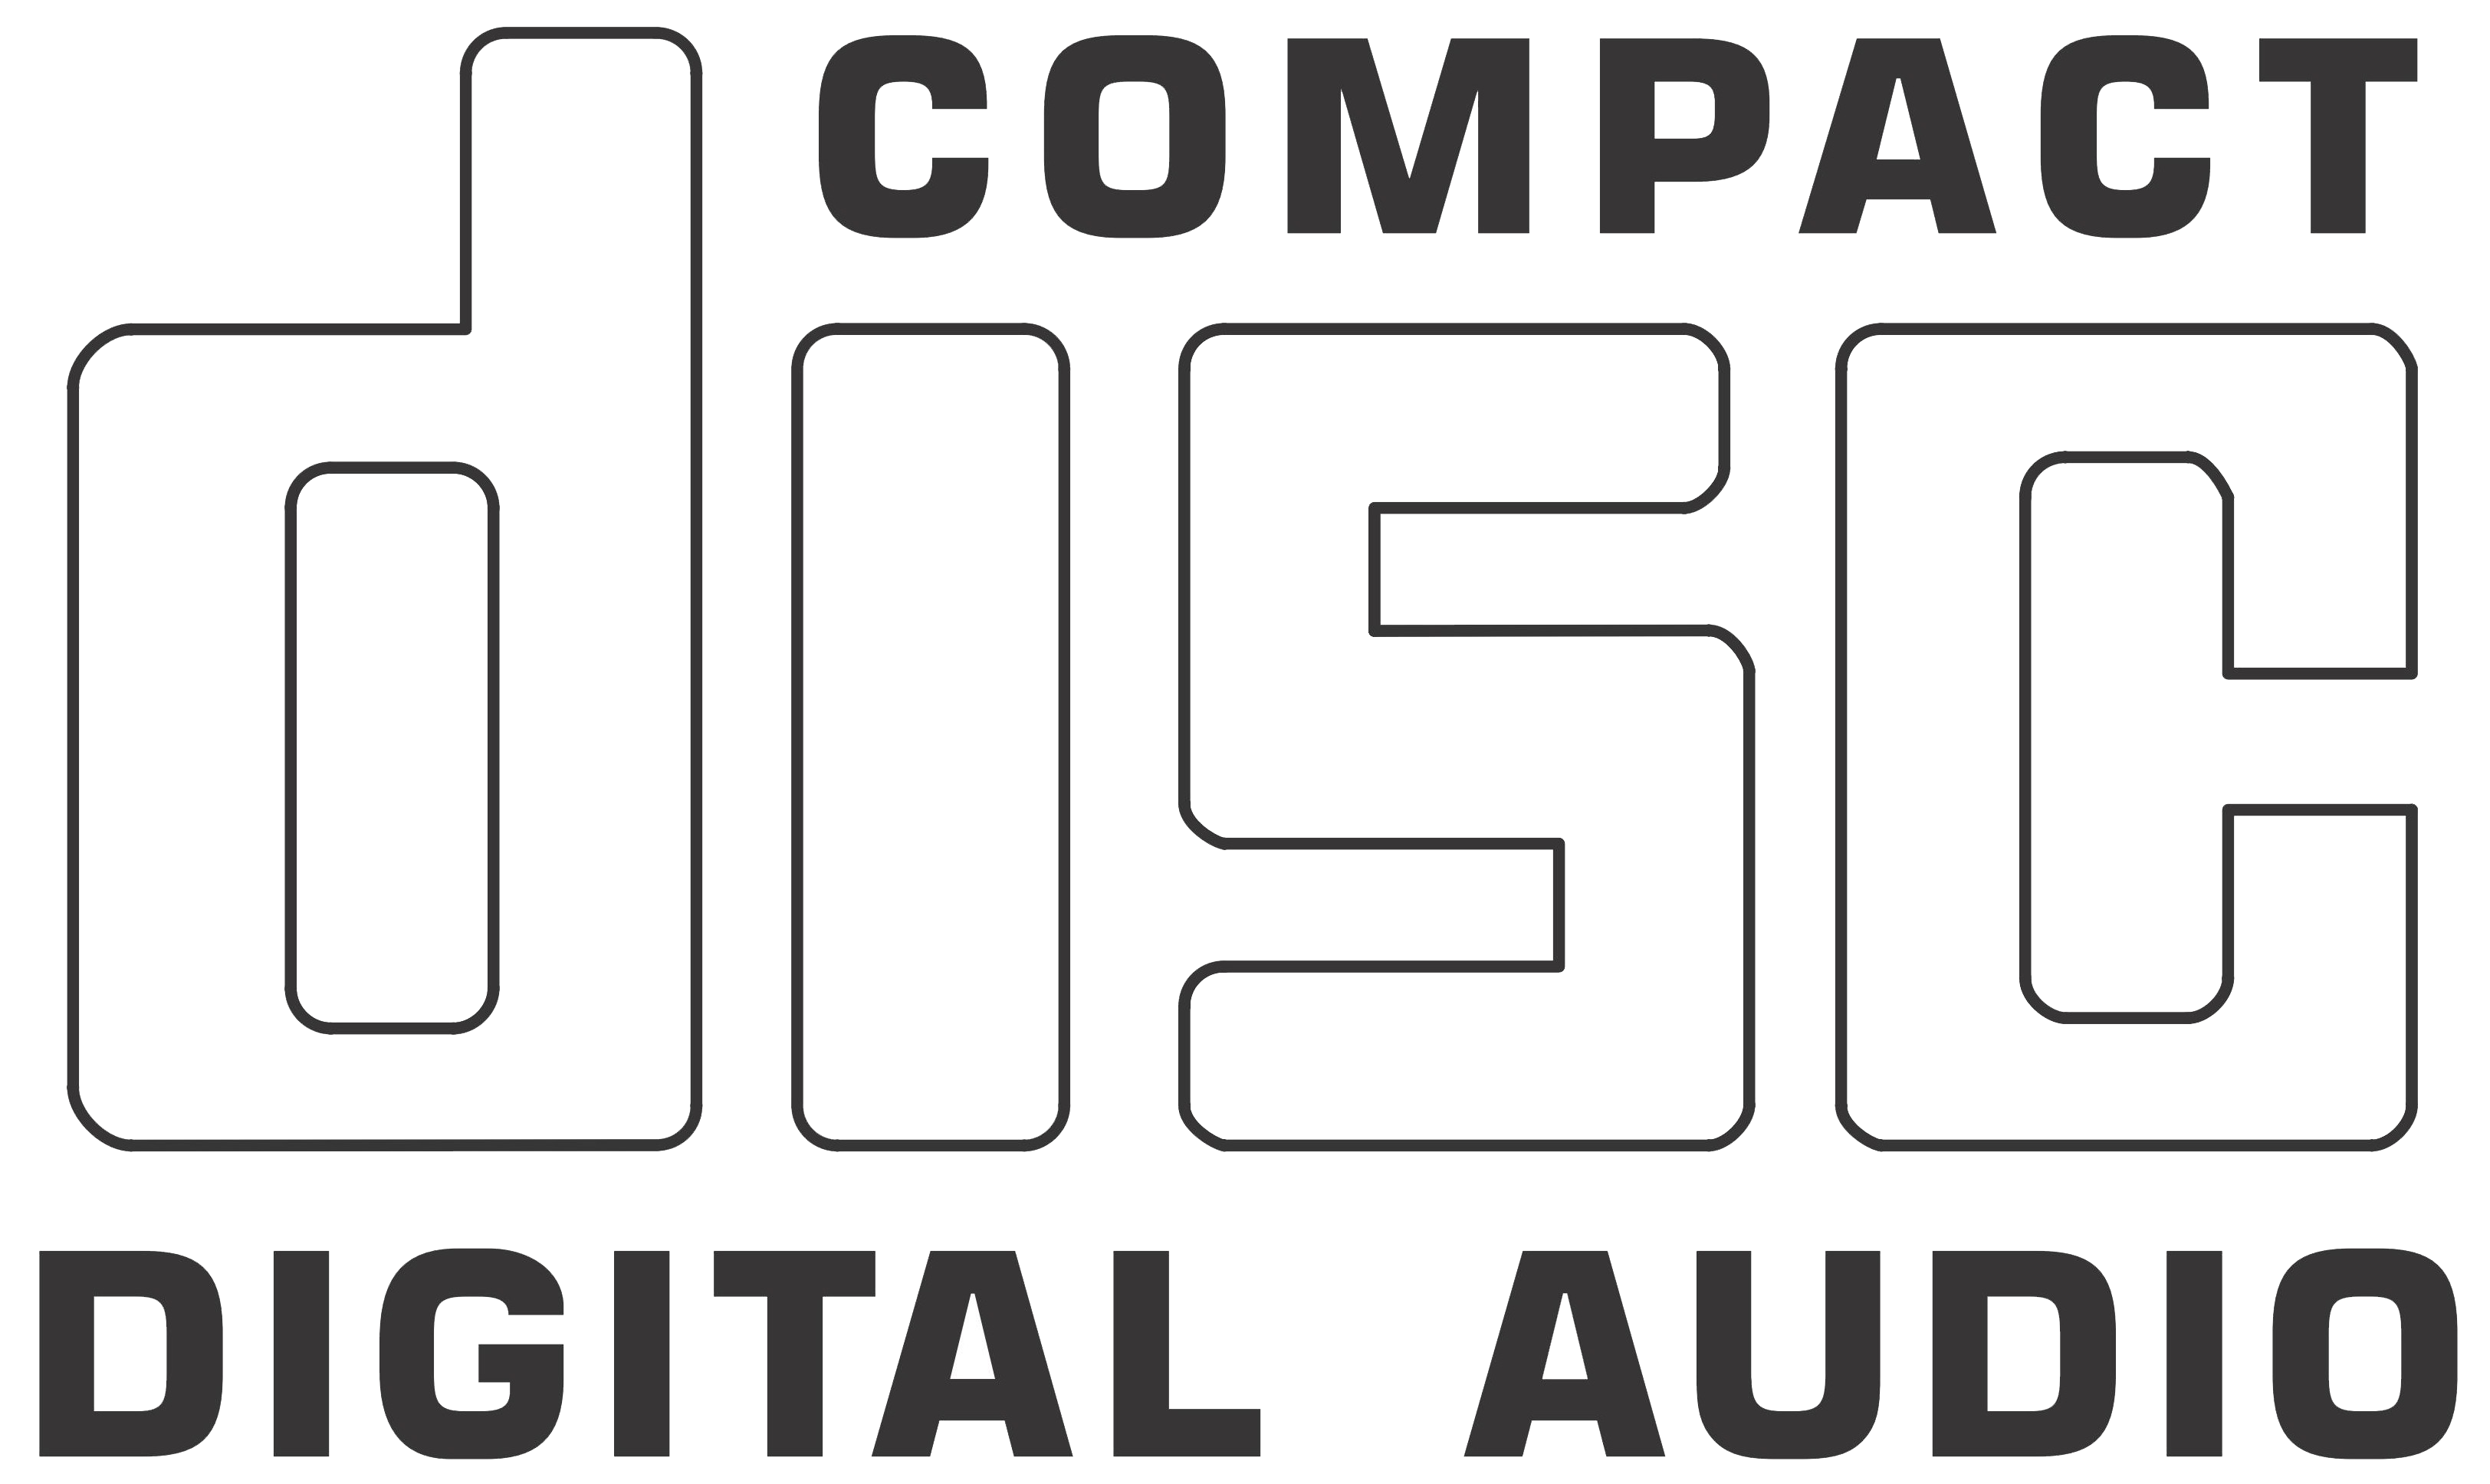 Лого диск. Compact Disc Digital Audio. Логотип CD Audio. Compact Disc logo. Compact Disc надпись.